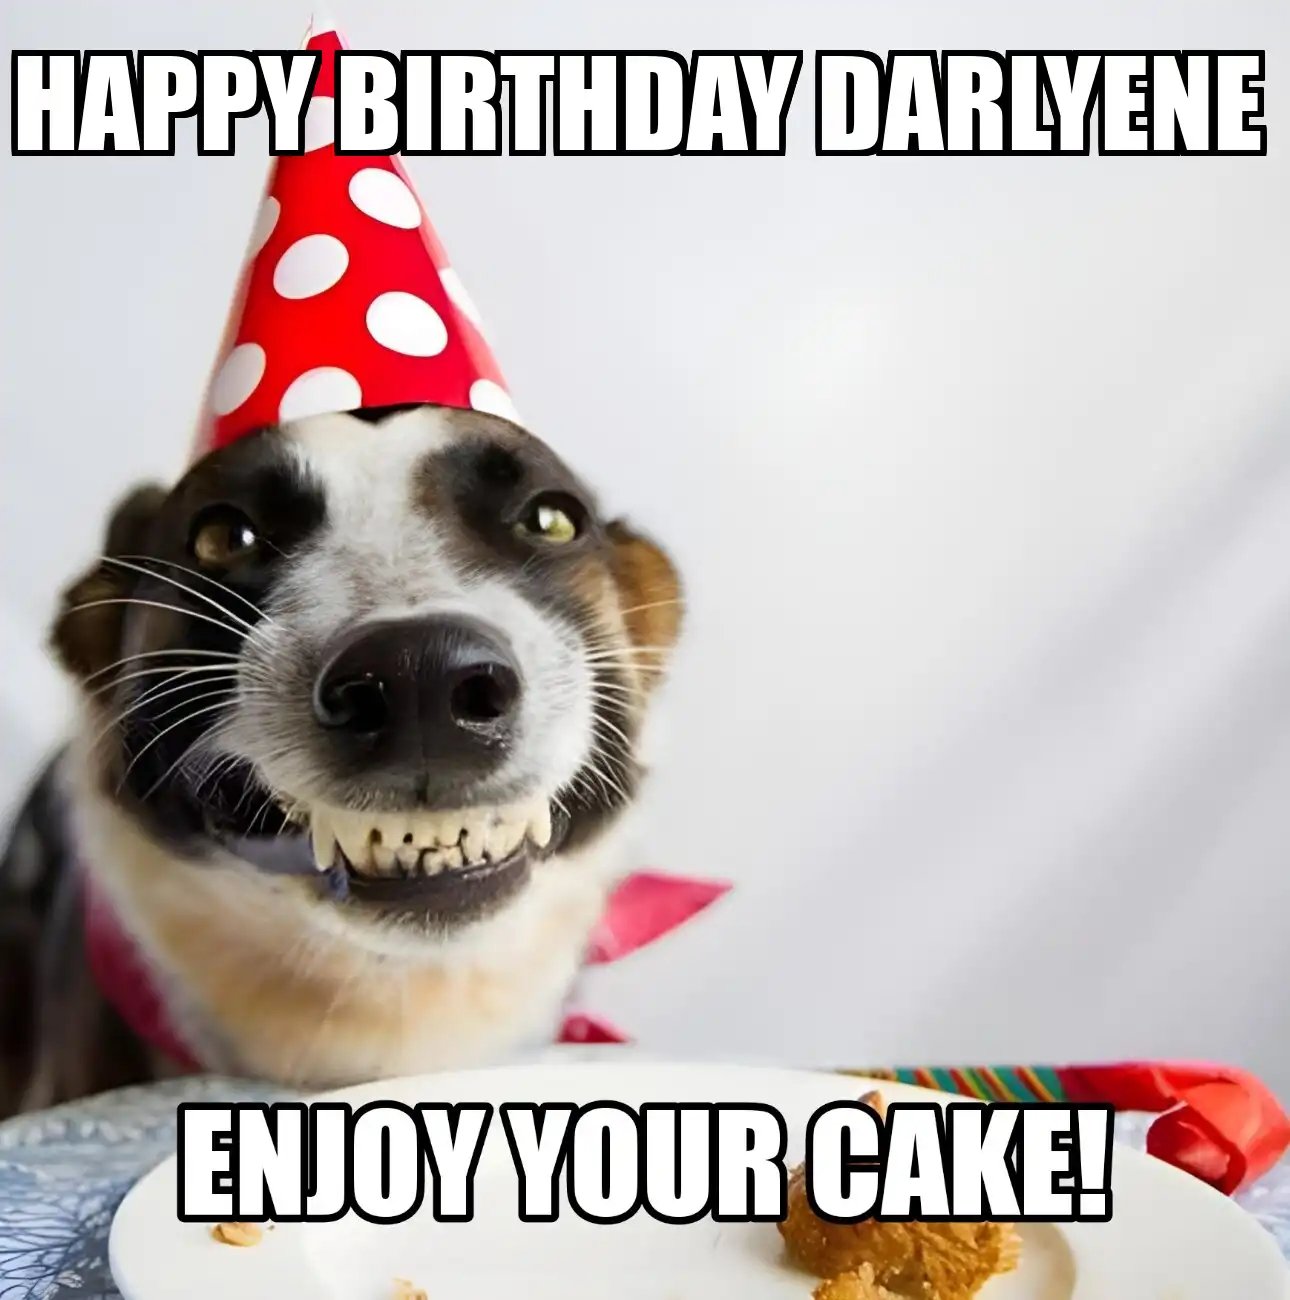 Happy Birthday Darlyene Enjoy Your Cake Dog Meme